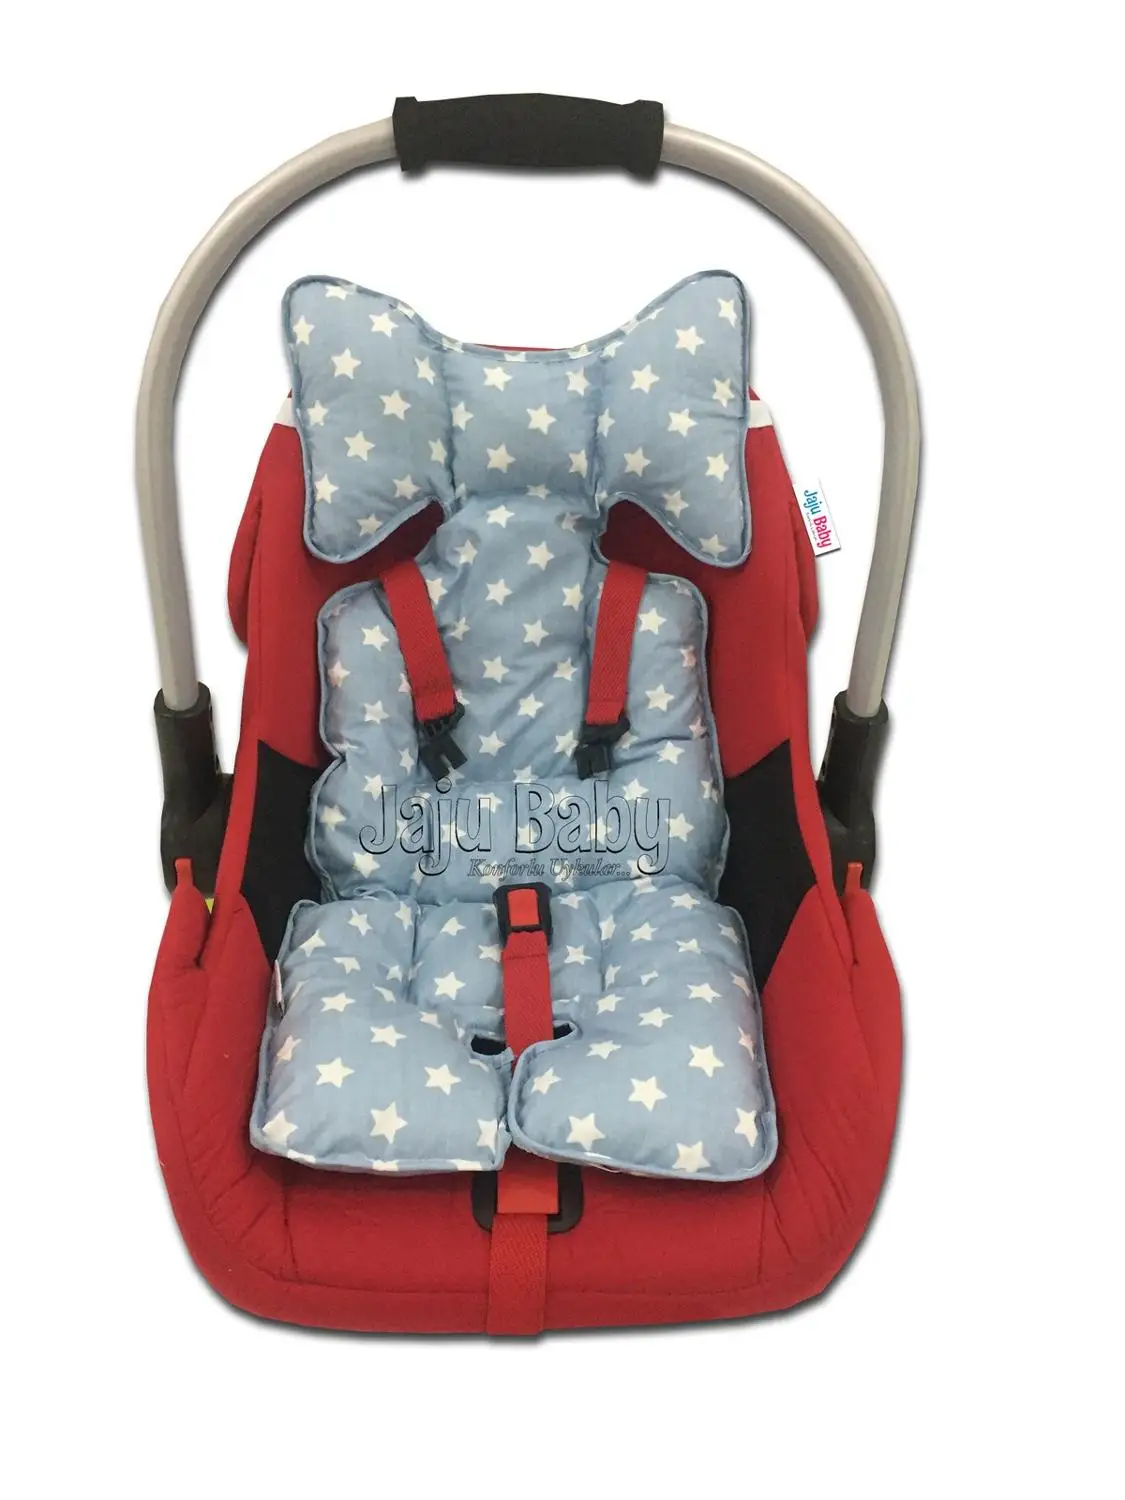 Роскошная Ортопедическая подушка для автомобильного сиденья Jaju Baby ручной работы в виде синей звезды, детская коляска, для новорожденных 0-12 ... от AliExpress RU&CIS NEW